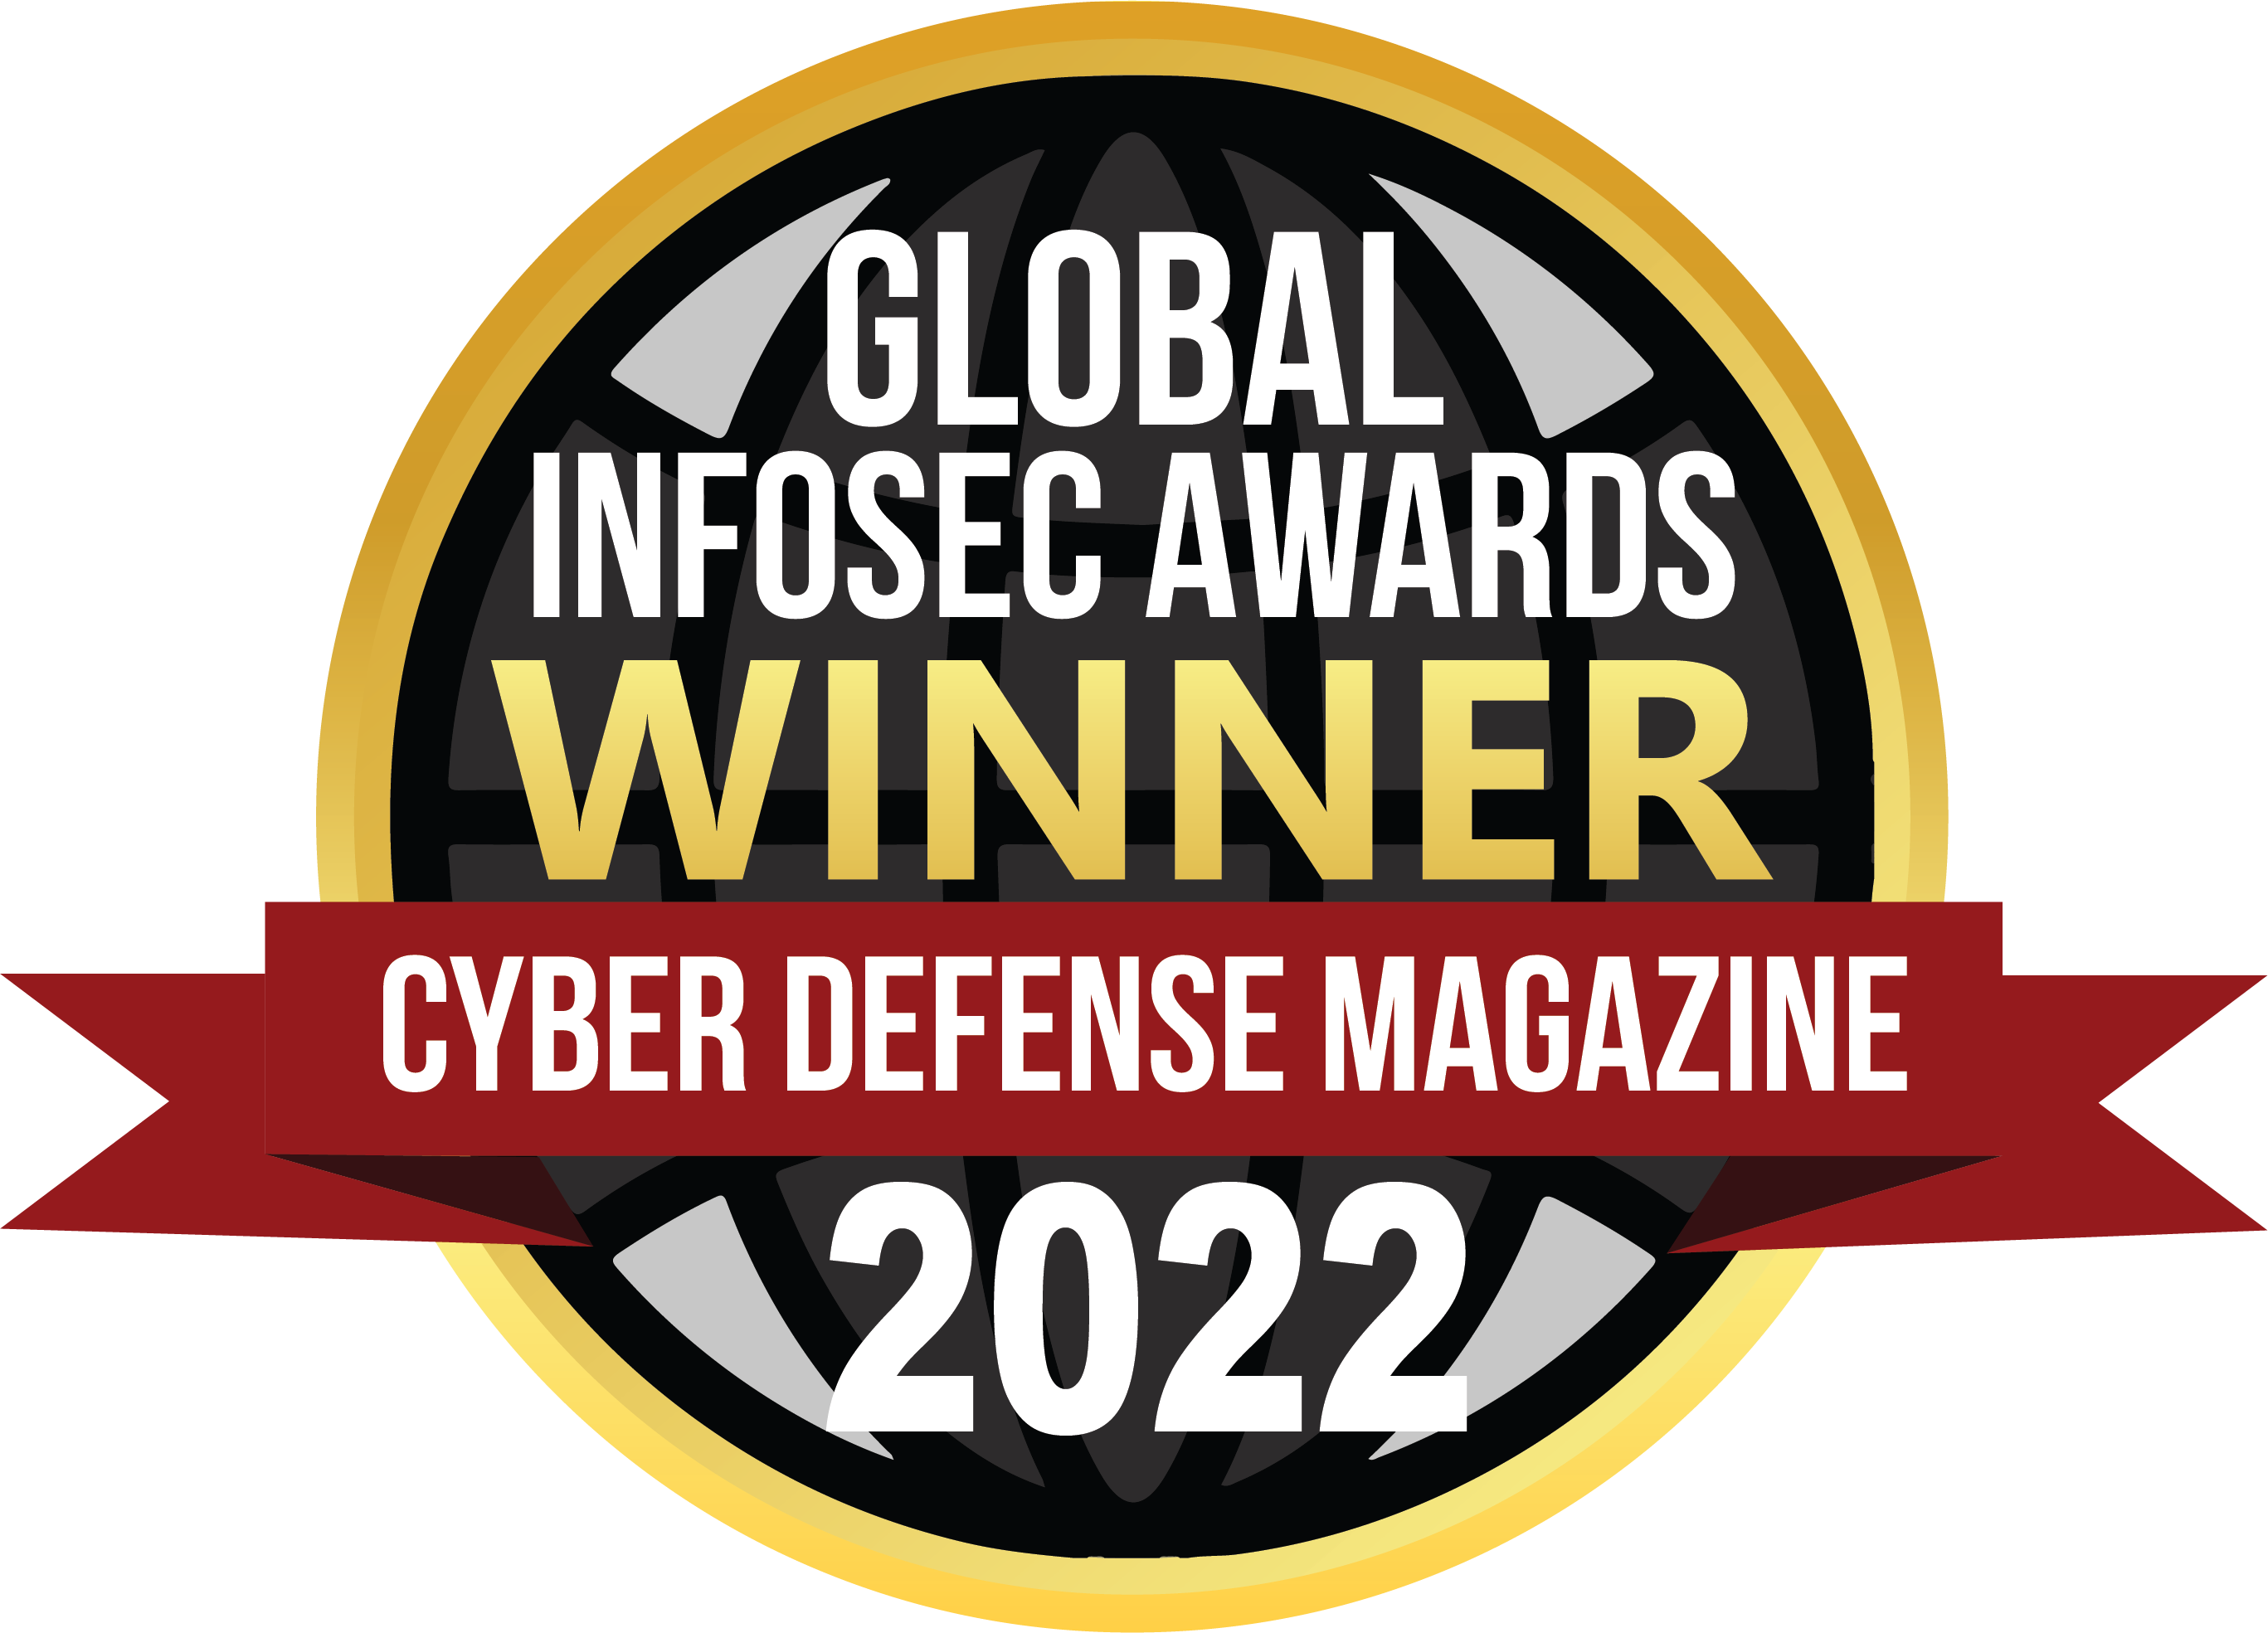 Global Infosec Awards Winner 2022 Cyber Defense Magazine